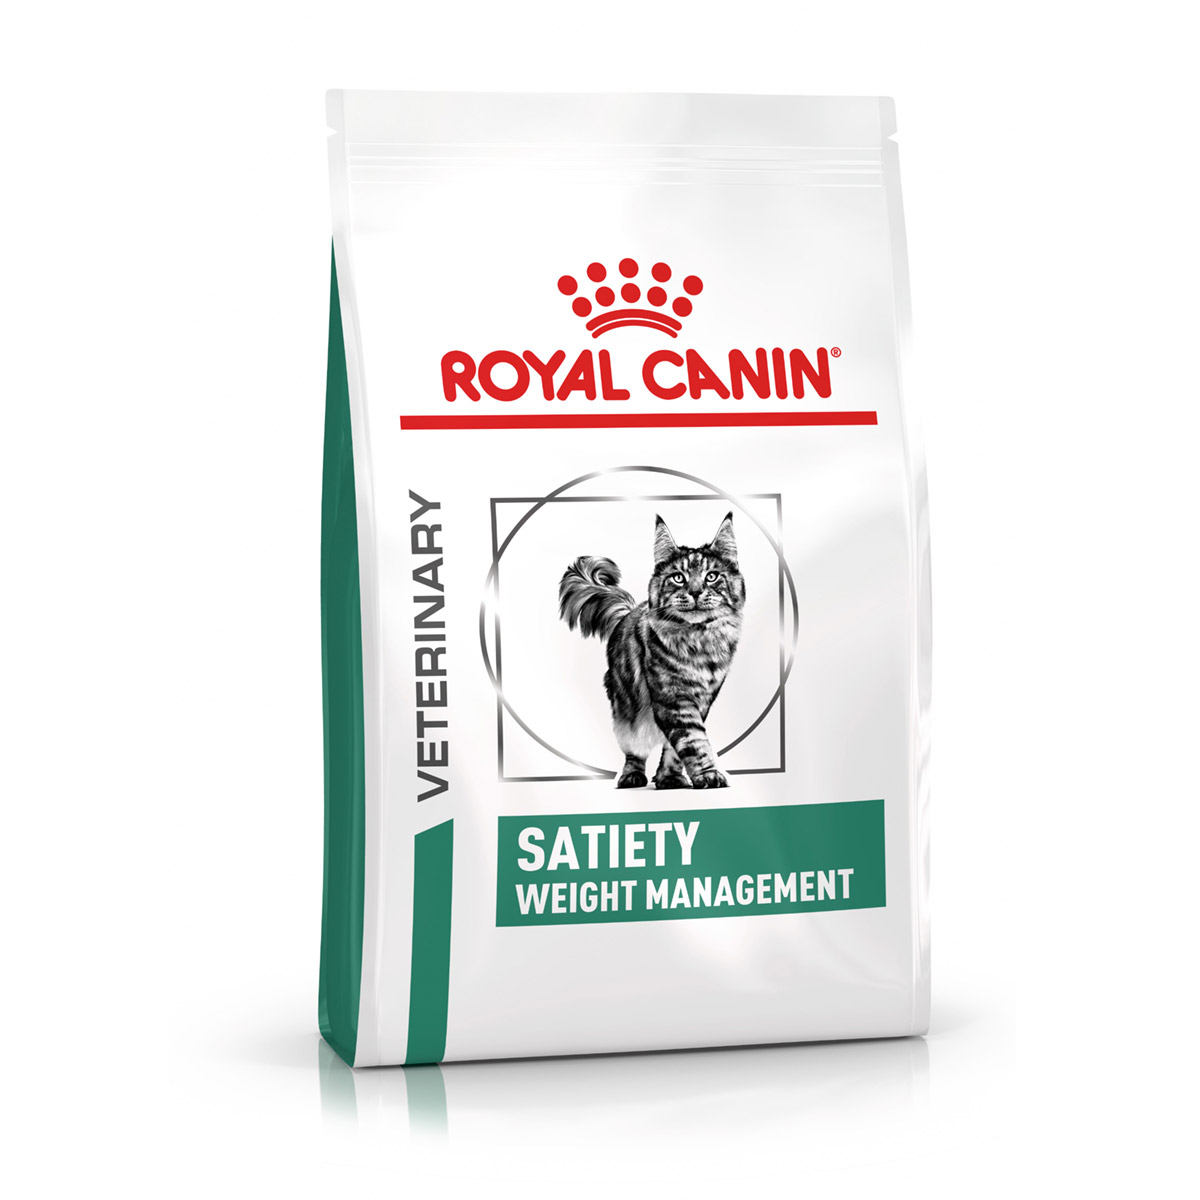 ROYAL CANIN® Veterinary SATIETY WEIGHT MANAGEMENT Trockenfutter für Katzen 6kg